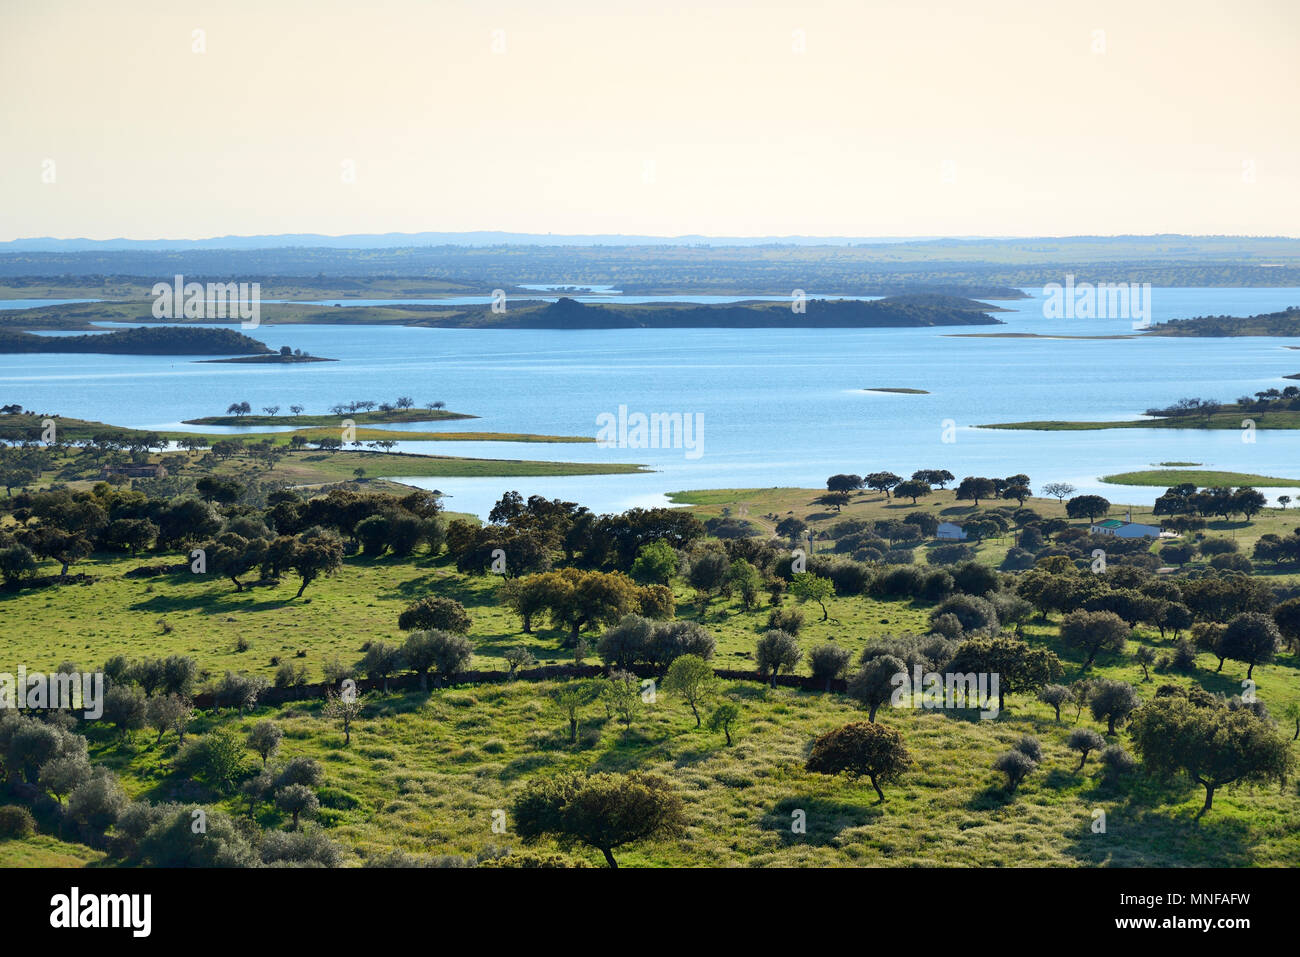 Embalse de Alqueva, el lago artificial más grande de Europa Occidental. Alentejo, Portugal Foto de stock